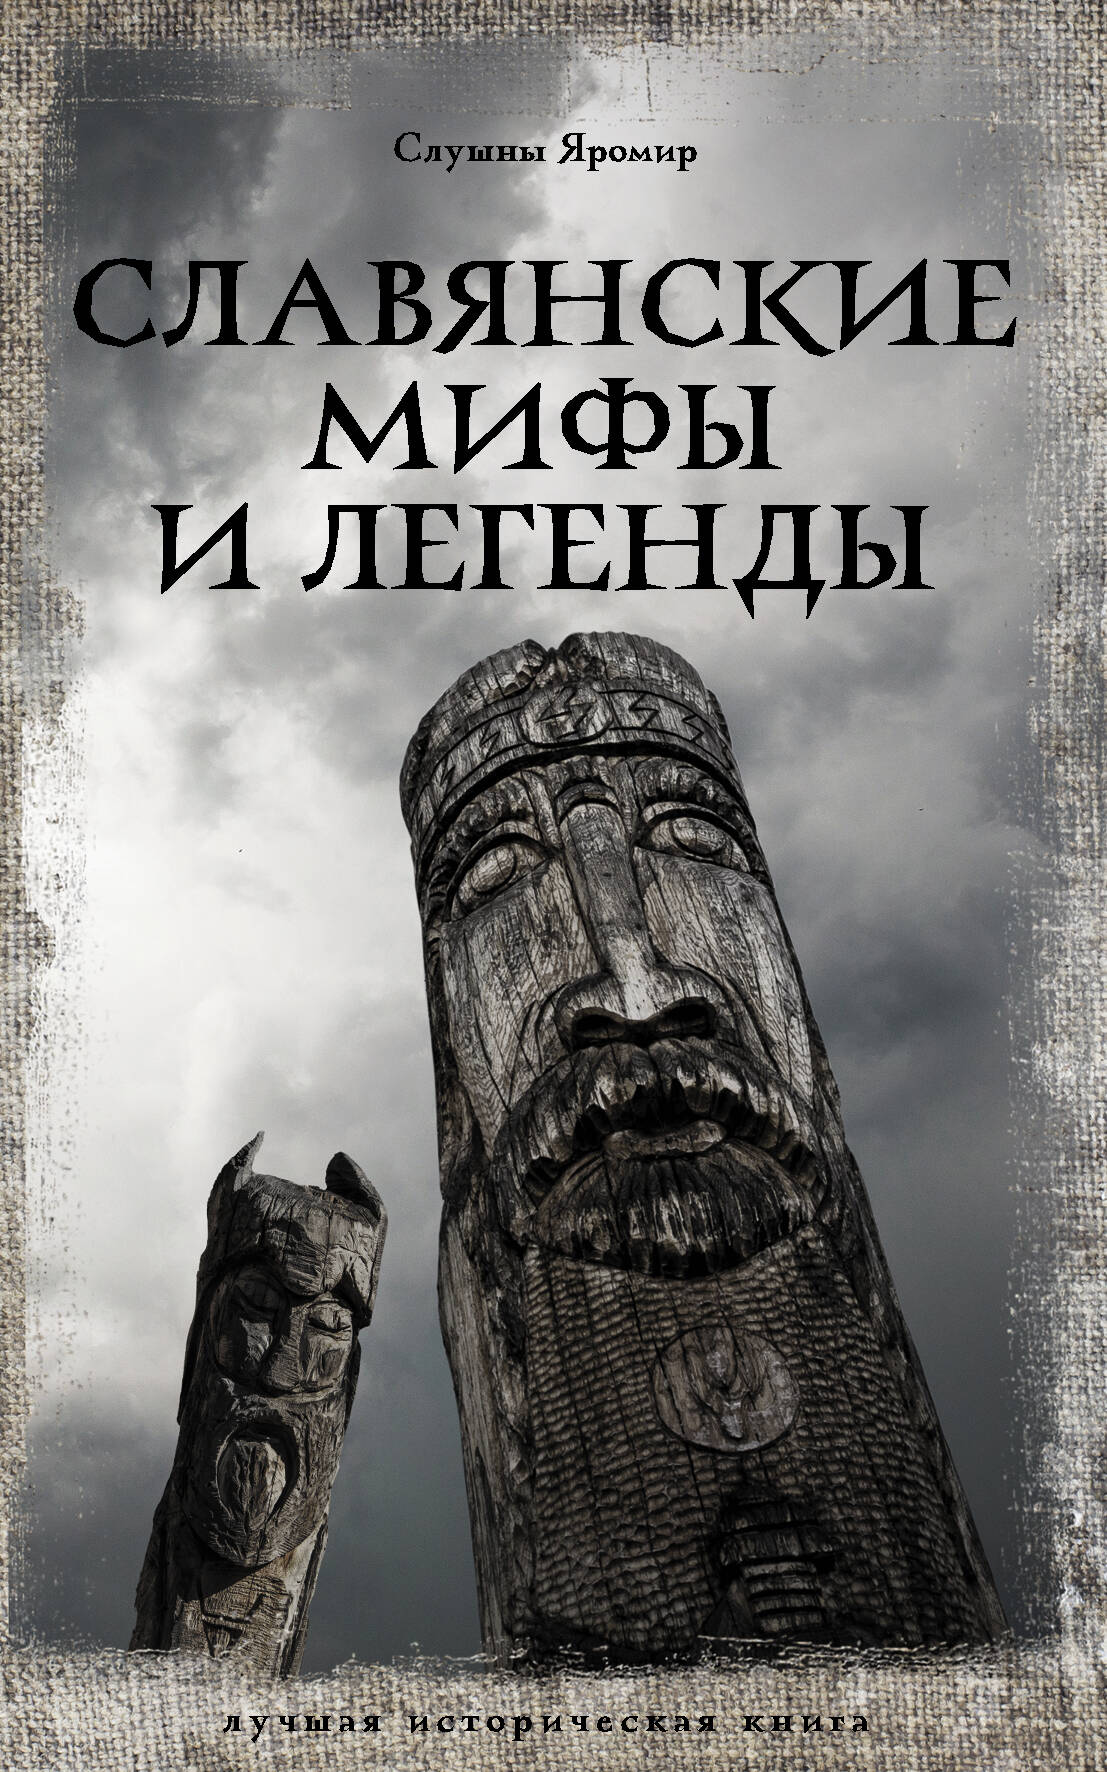 Слушны Яромир Славянские мифы и легенды